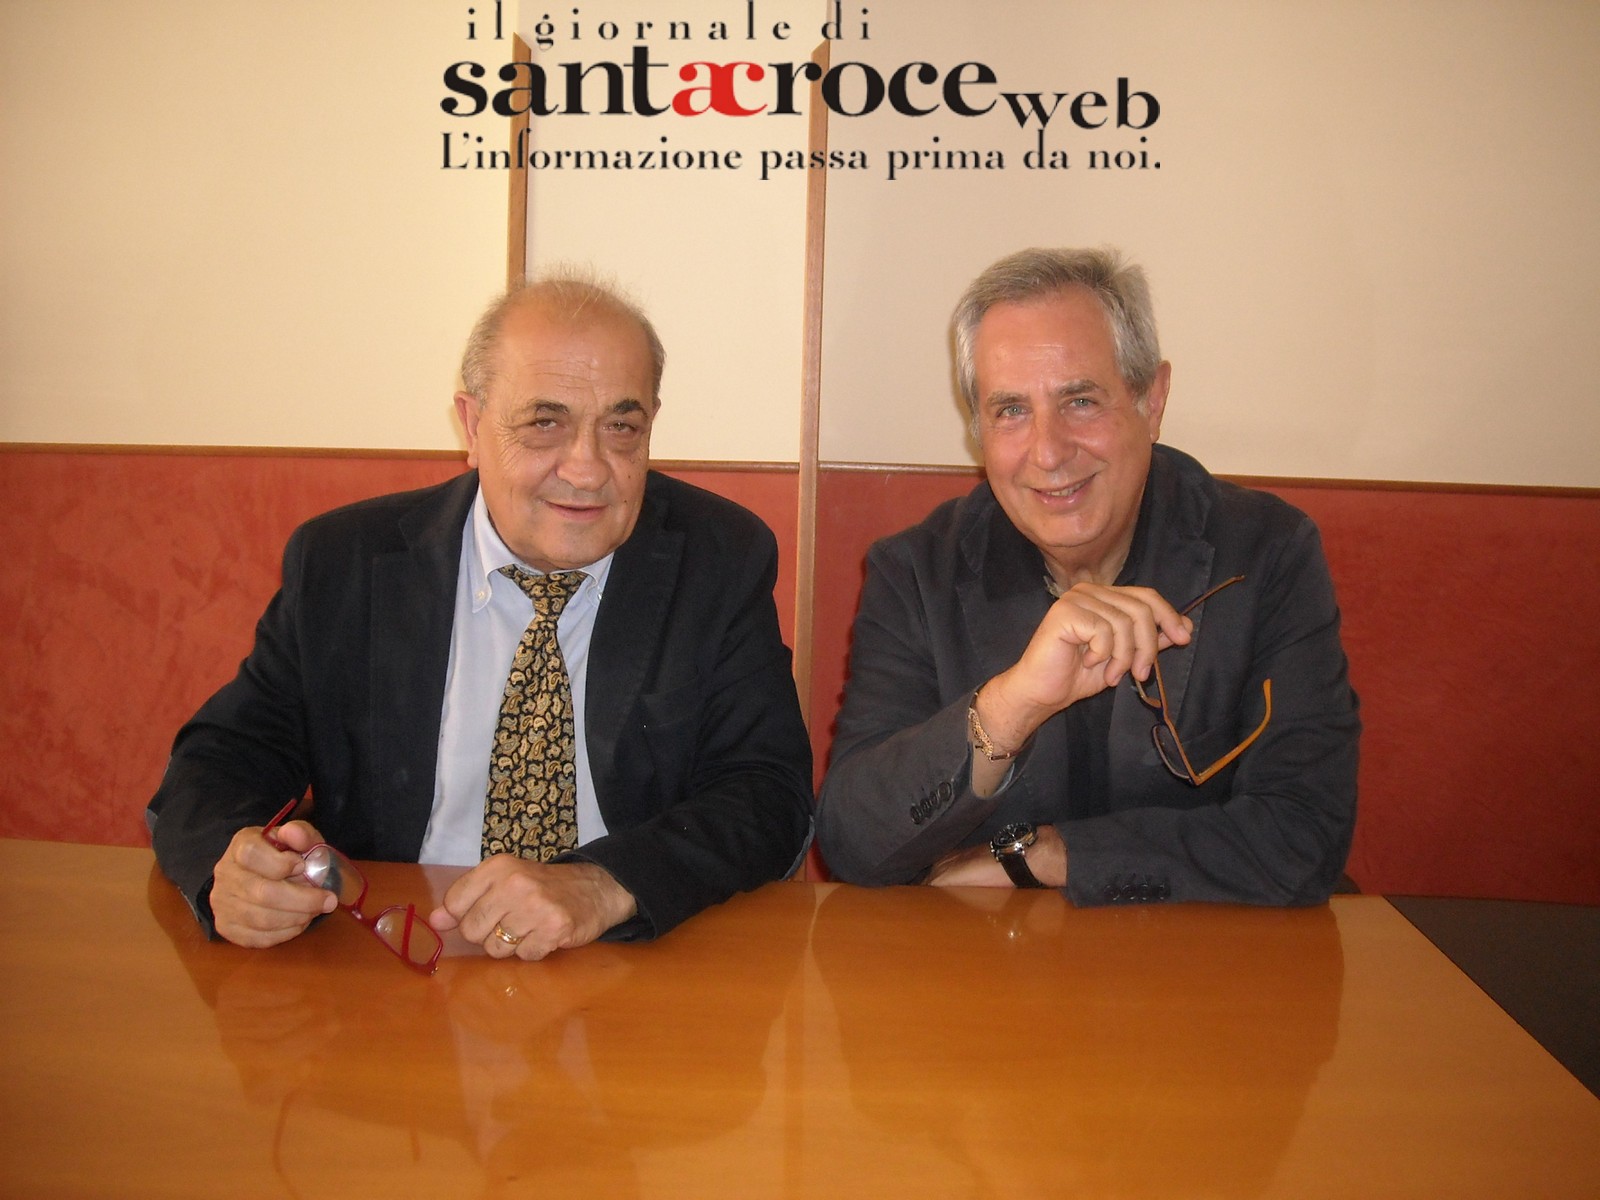  ASP, intervista  ai direttori Maniscalco e Amato: “Aprire nuovo ospedale e ridurre liste d’attesa”